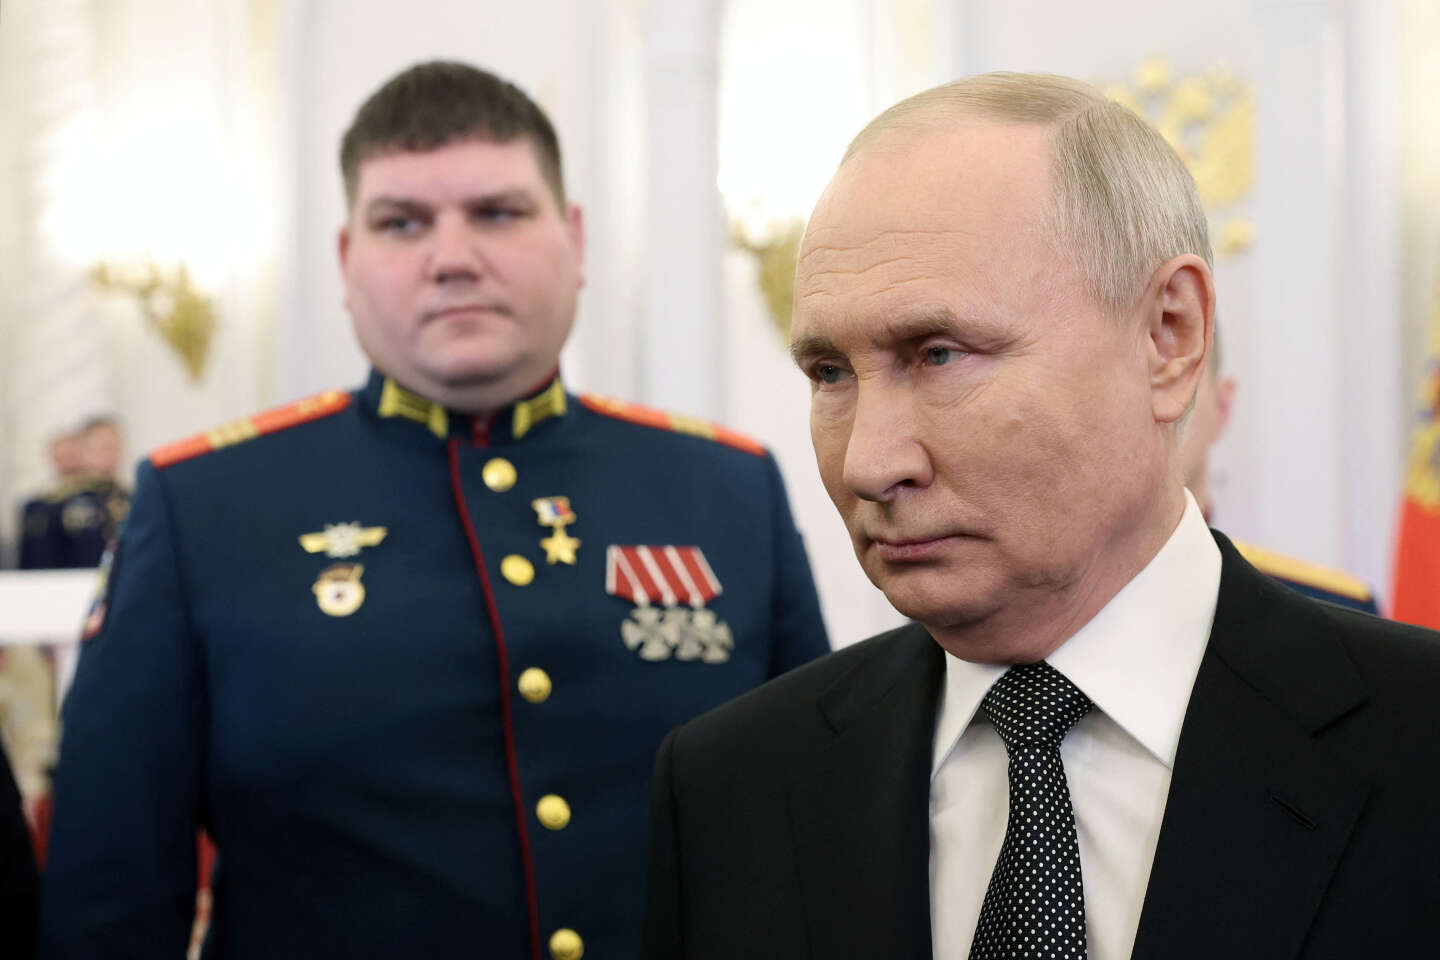 Vladimir Poetin heeft zich bij de Russische presidentsverkiezingen van maart 2024 kandidaat gesteld voor een vijfde termijn